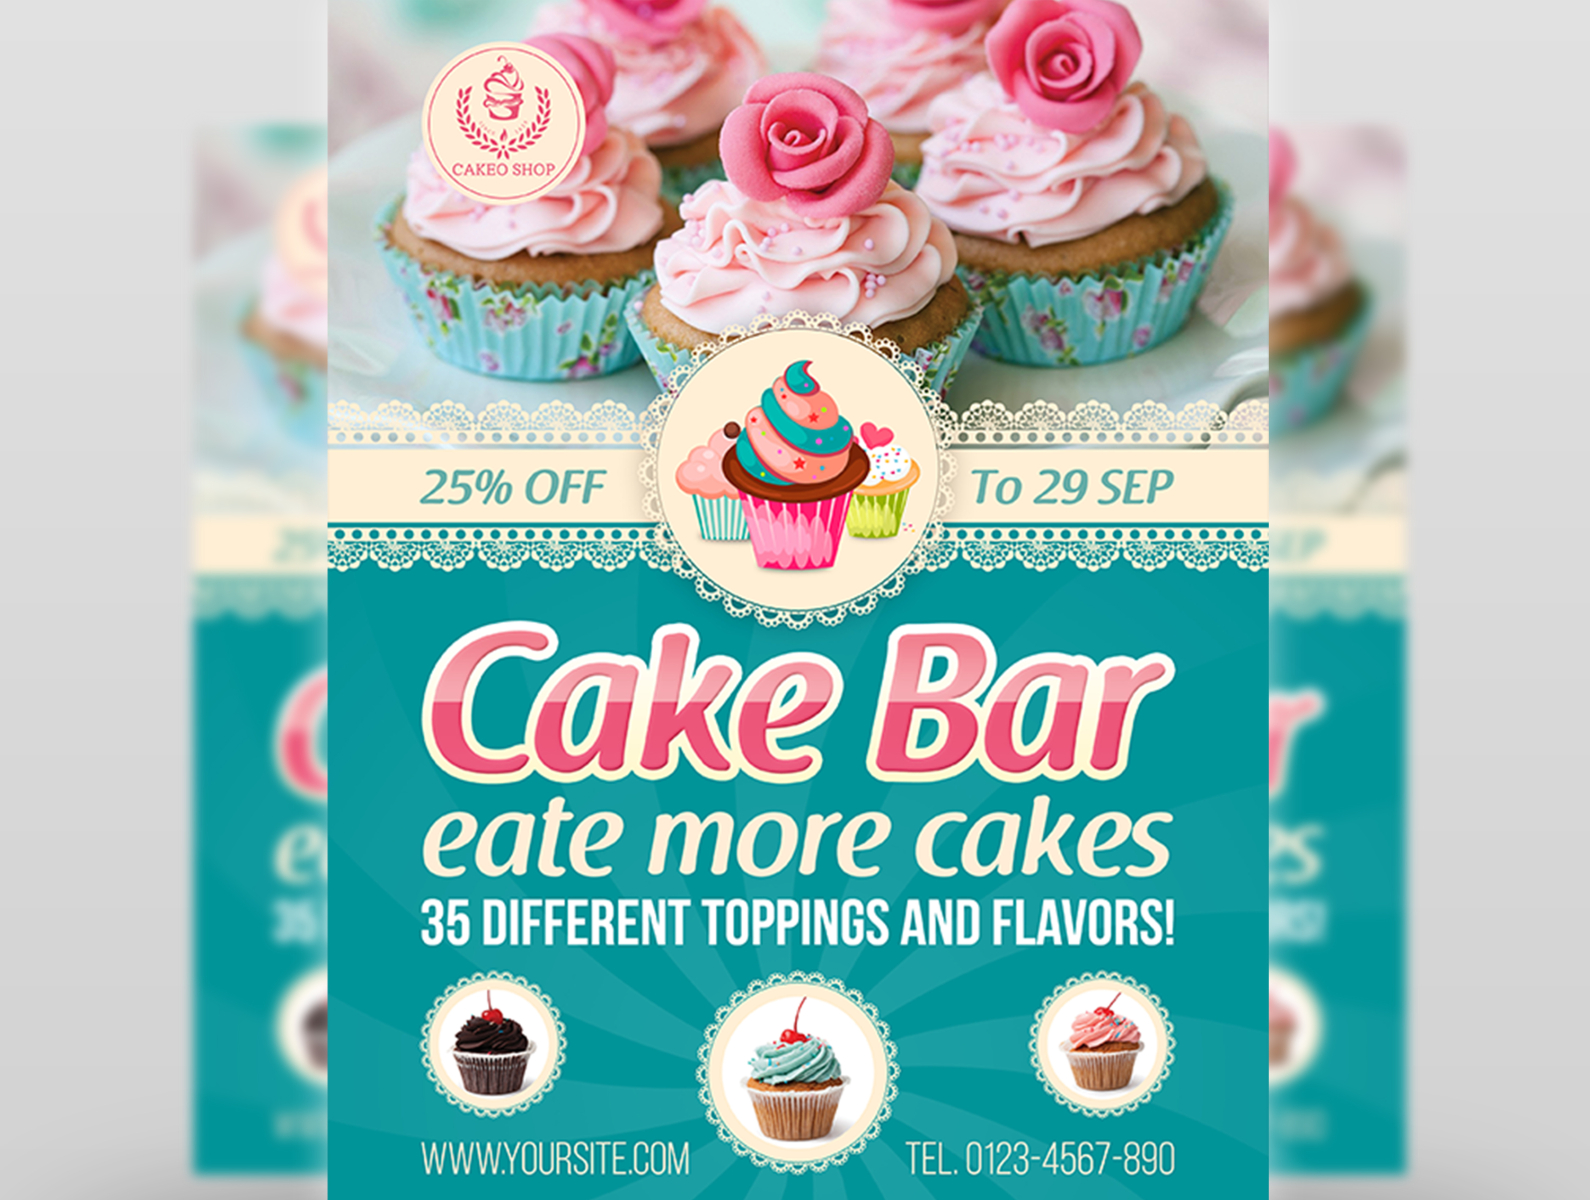 Desserts & Pastries | Sugar Cakes Patisserie